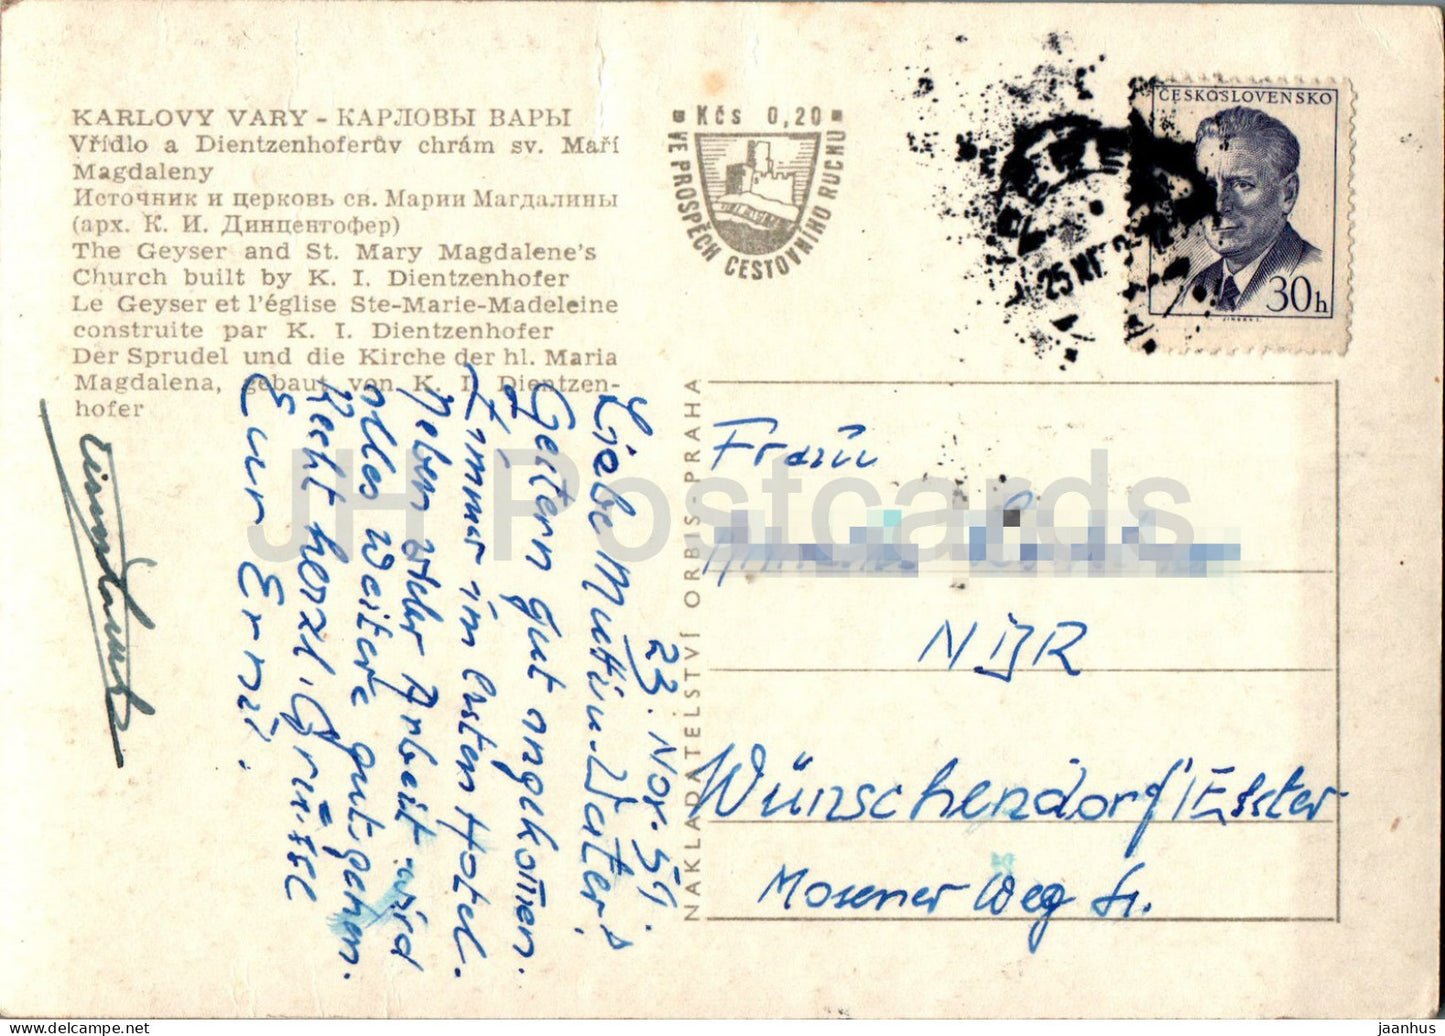 Karlsbad – Der Geysir und die Kirche St. Maria Magdalena – alte Postkarte – 1959 – Tschechische Republik – Tschechoslowakei – gebraucht